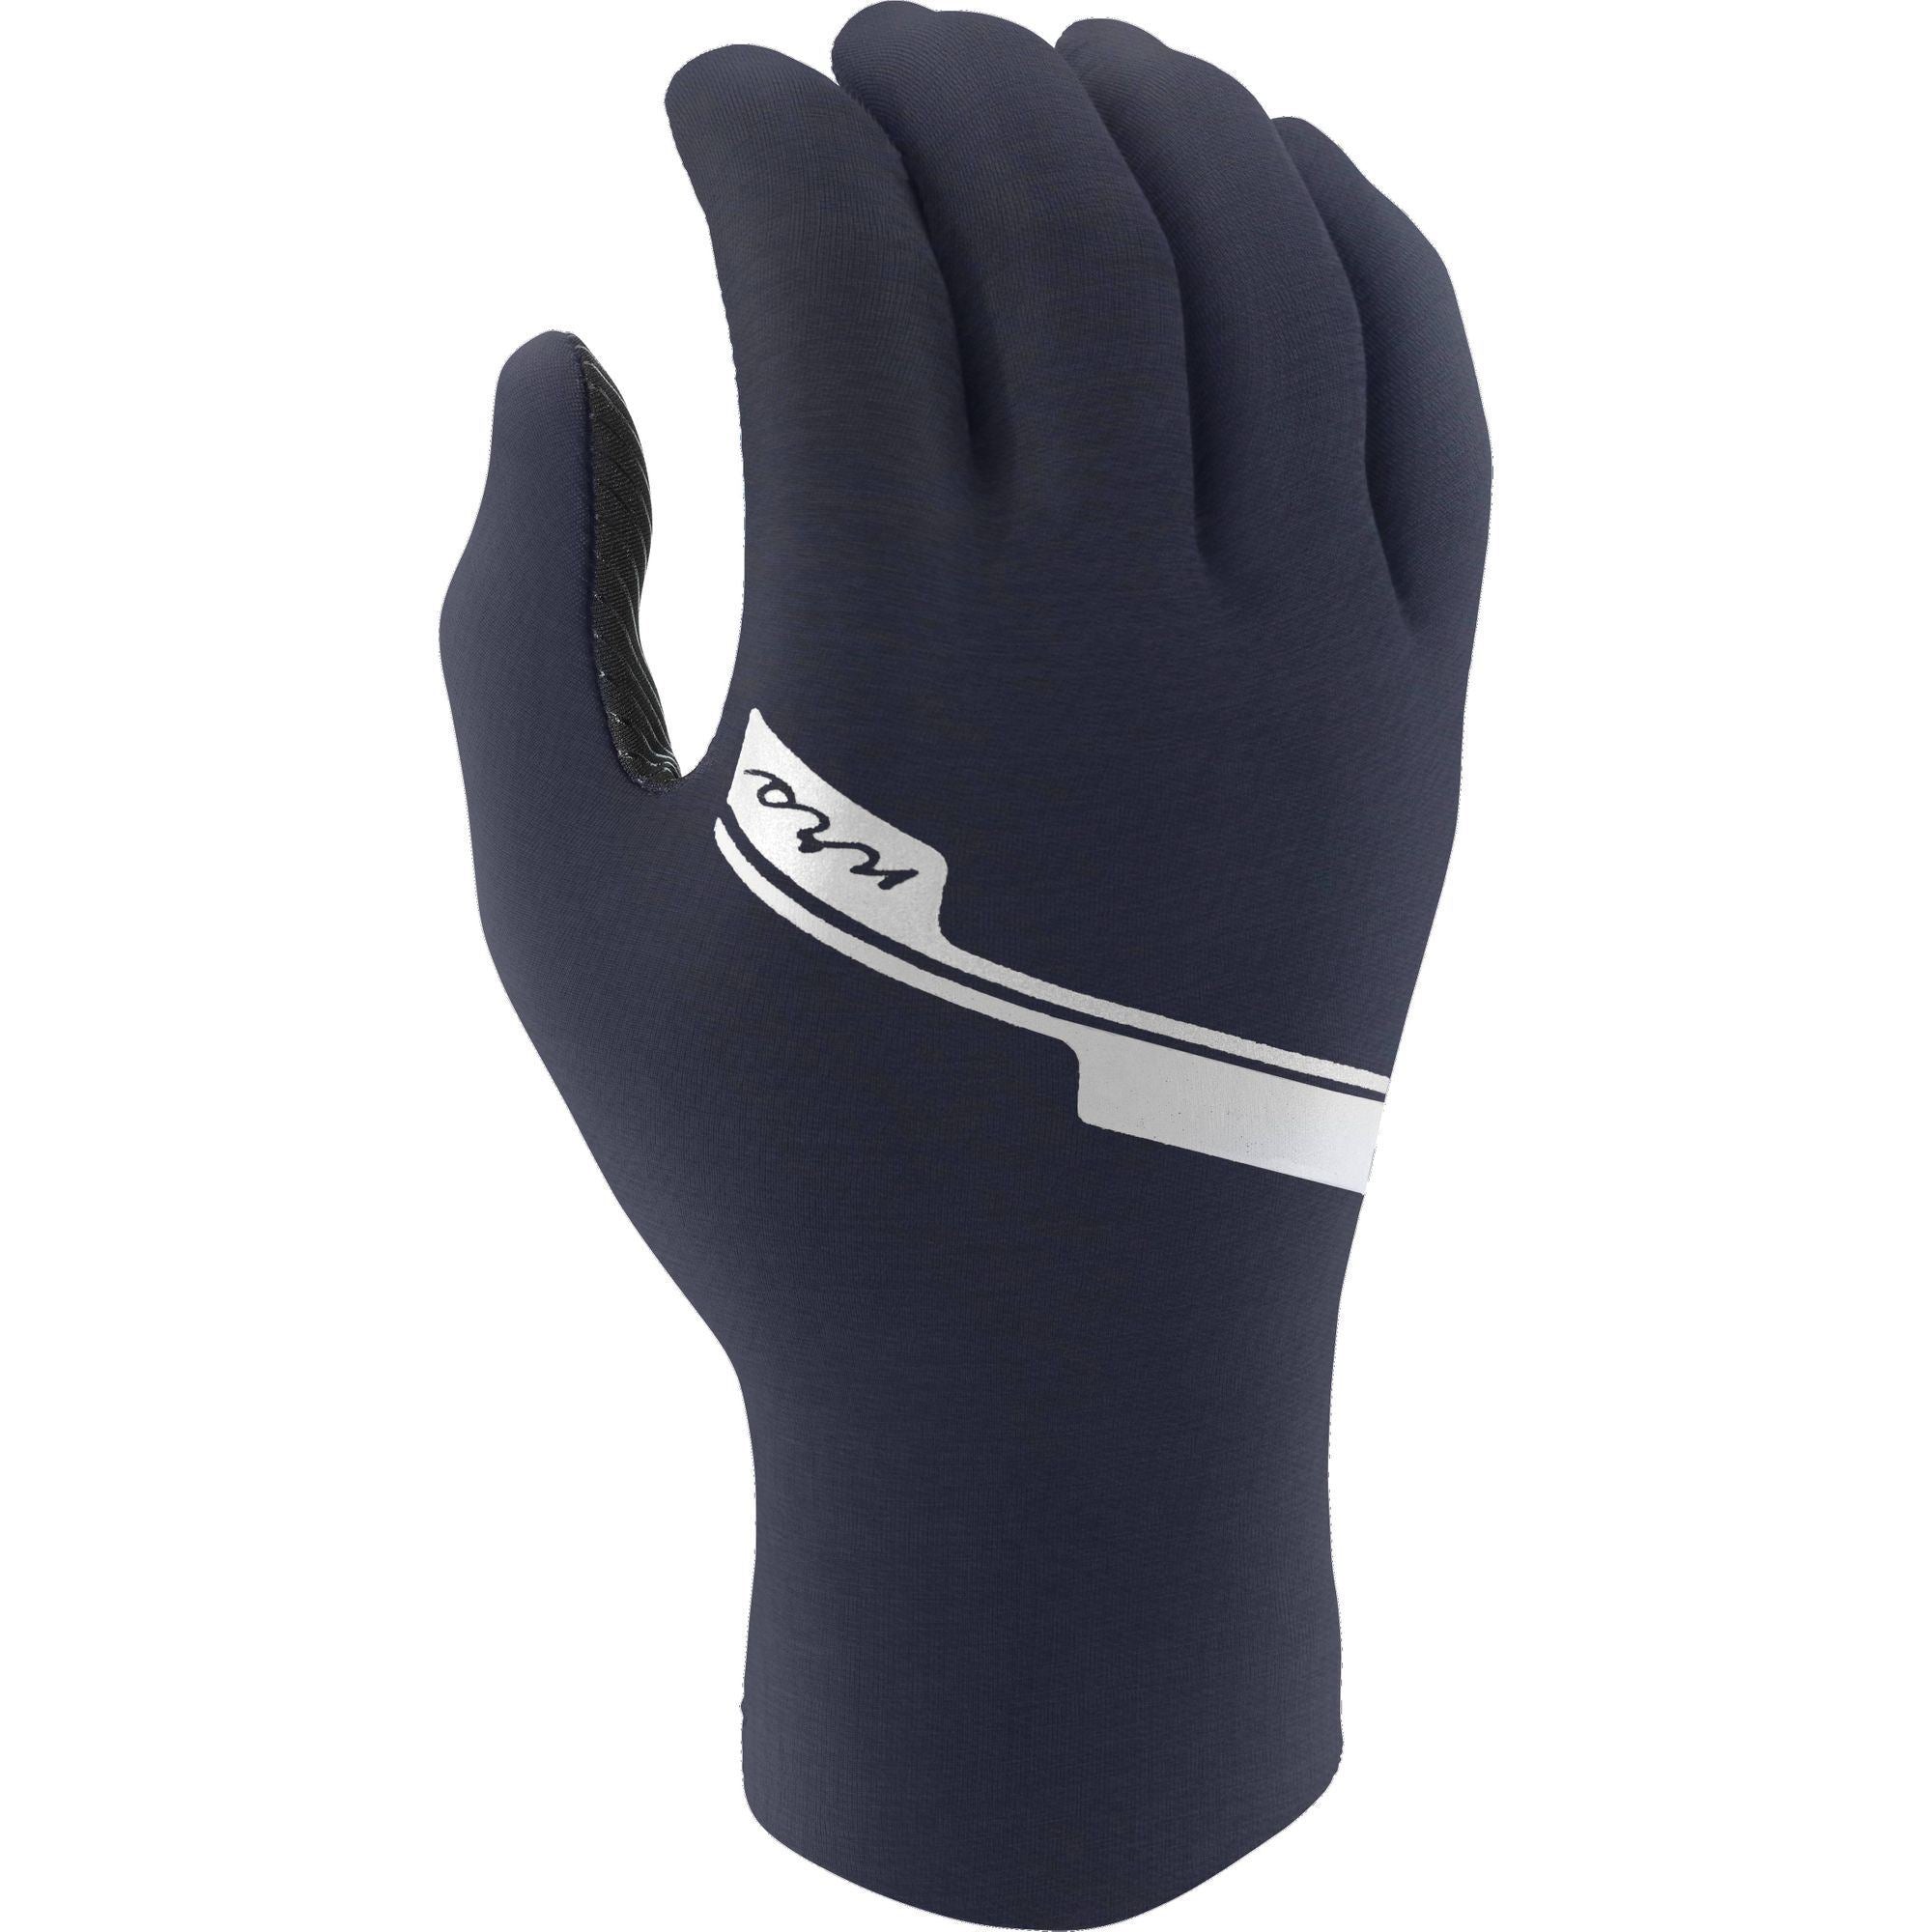 NRS HydroSkin Paddling Gloves, Women's